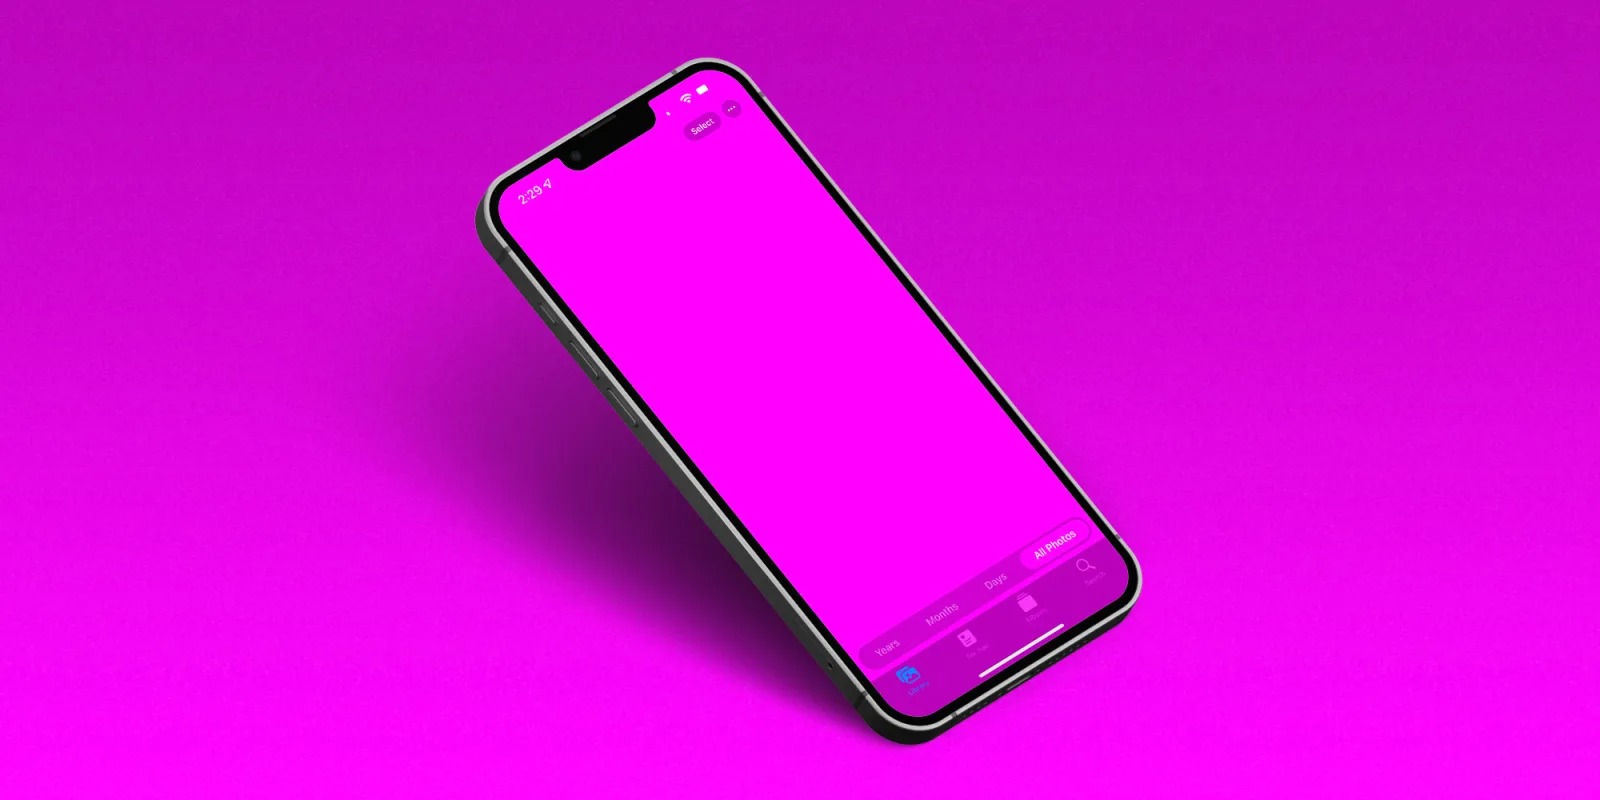 Sửa lỗi màn hình iPhone 13 màu hồng - Nếu bạn đang gặp sự cố với chiếc iPhone 13 màu hồng của mình, đừng lo lắng. Chúng tôi sẽ giúp bạn sửa chữa và mang lại cho bạn trải nghiệm sử dụng điện thoại tuyệt vời mà không gặp bất kỳ sự cố nào. Hãy đến với chúng tôi và tận hưởng những tính năng độc đáo của chiếc điện thoại mà bạn yêu thích.